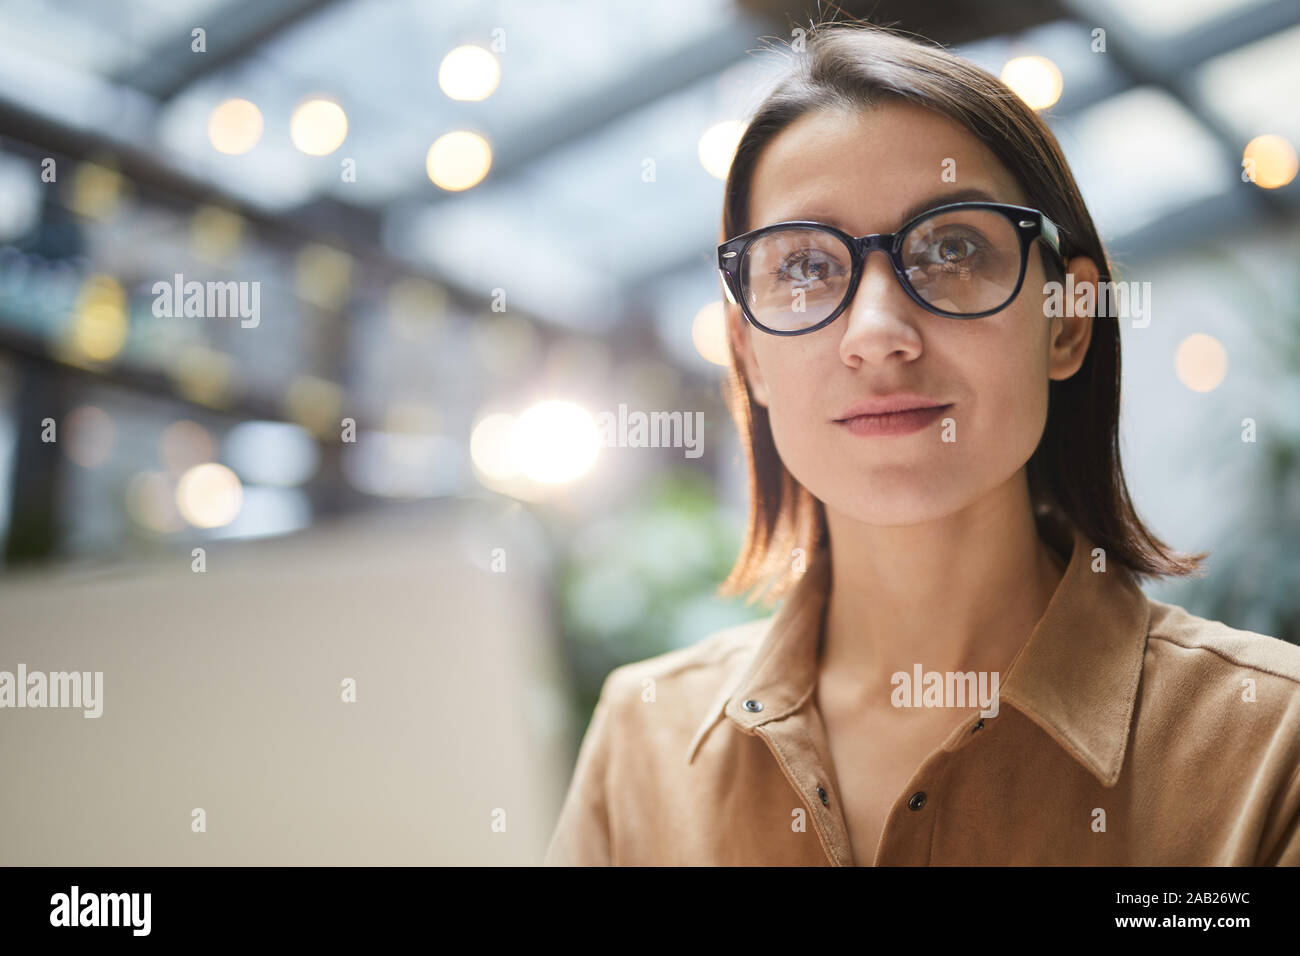 Retrato de la empresaria contemporánea lleva gafas, sonriendo a la cámara mientras se trabaja en la cafetería al aire libre, espacio de copia Foto de stock